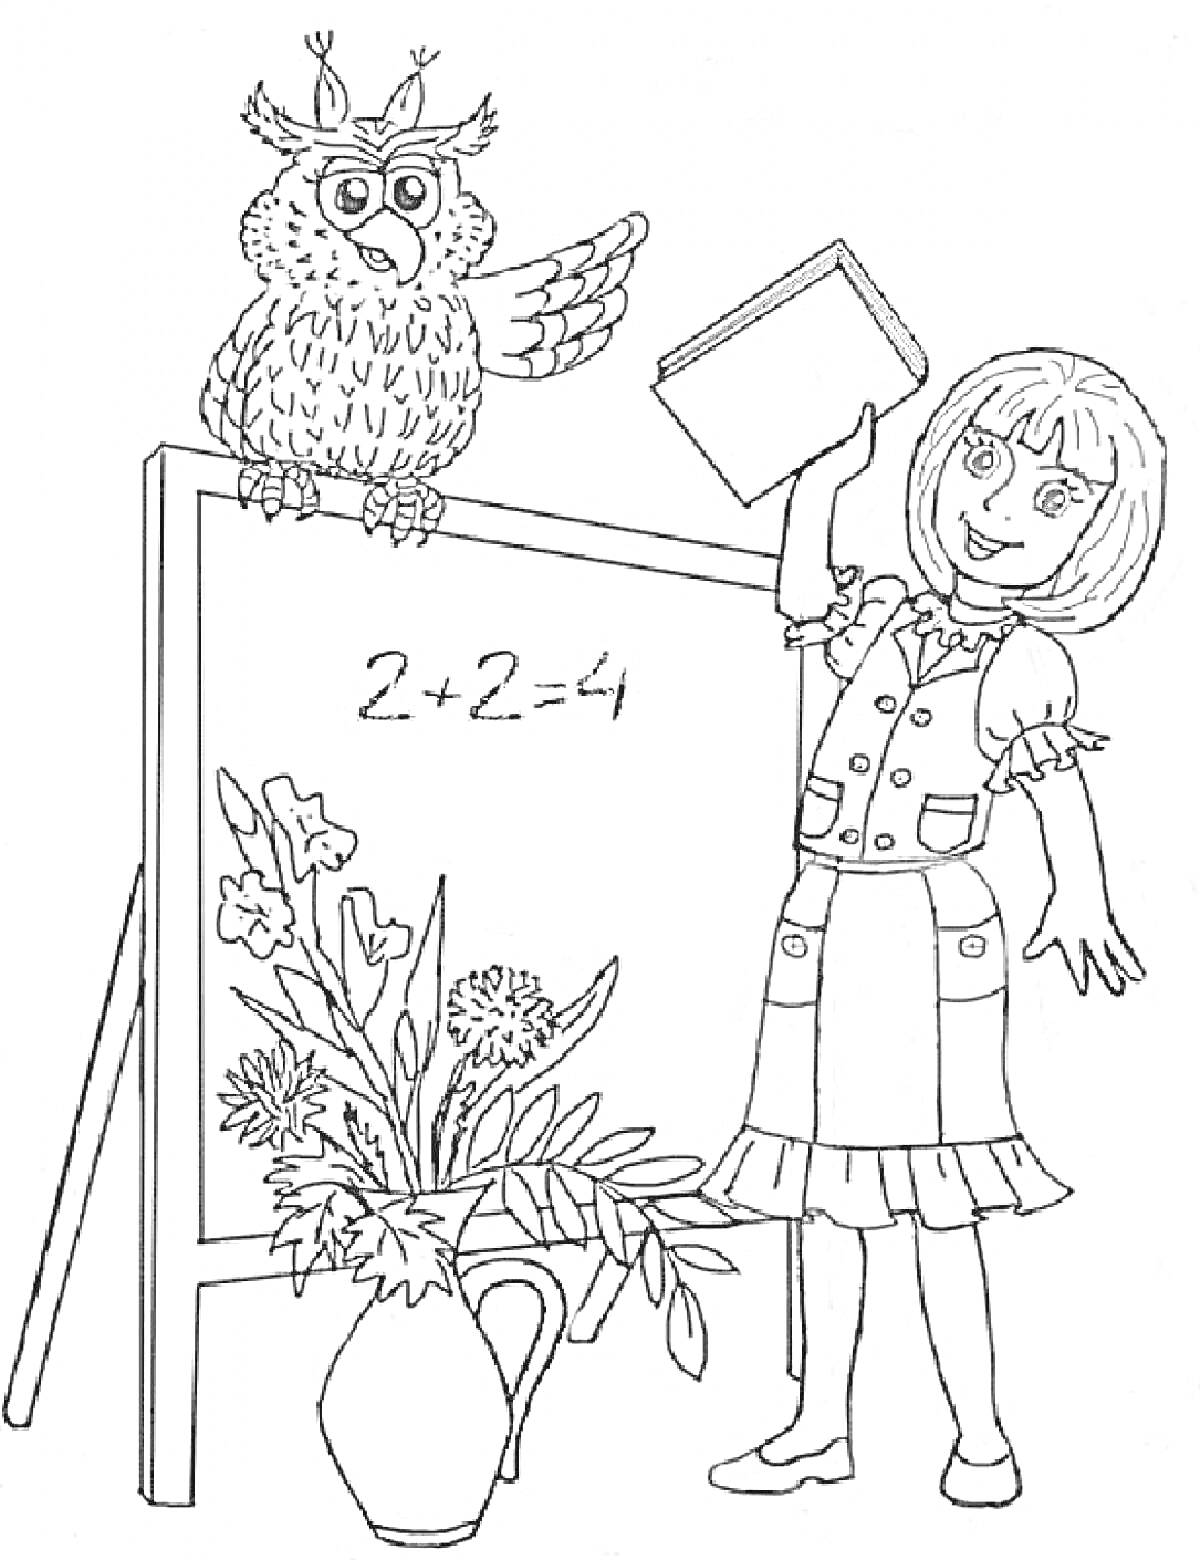 Раскраска Сова на доске, учитель с книгой, цветы в вазе, доска с уравнением 2+2=4